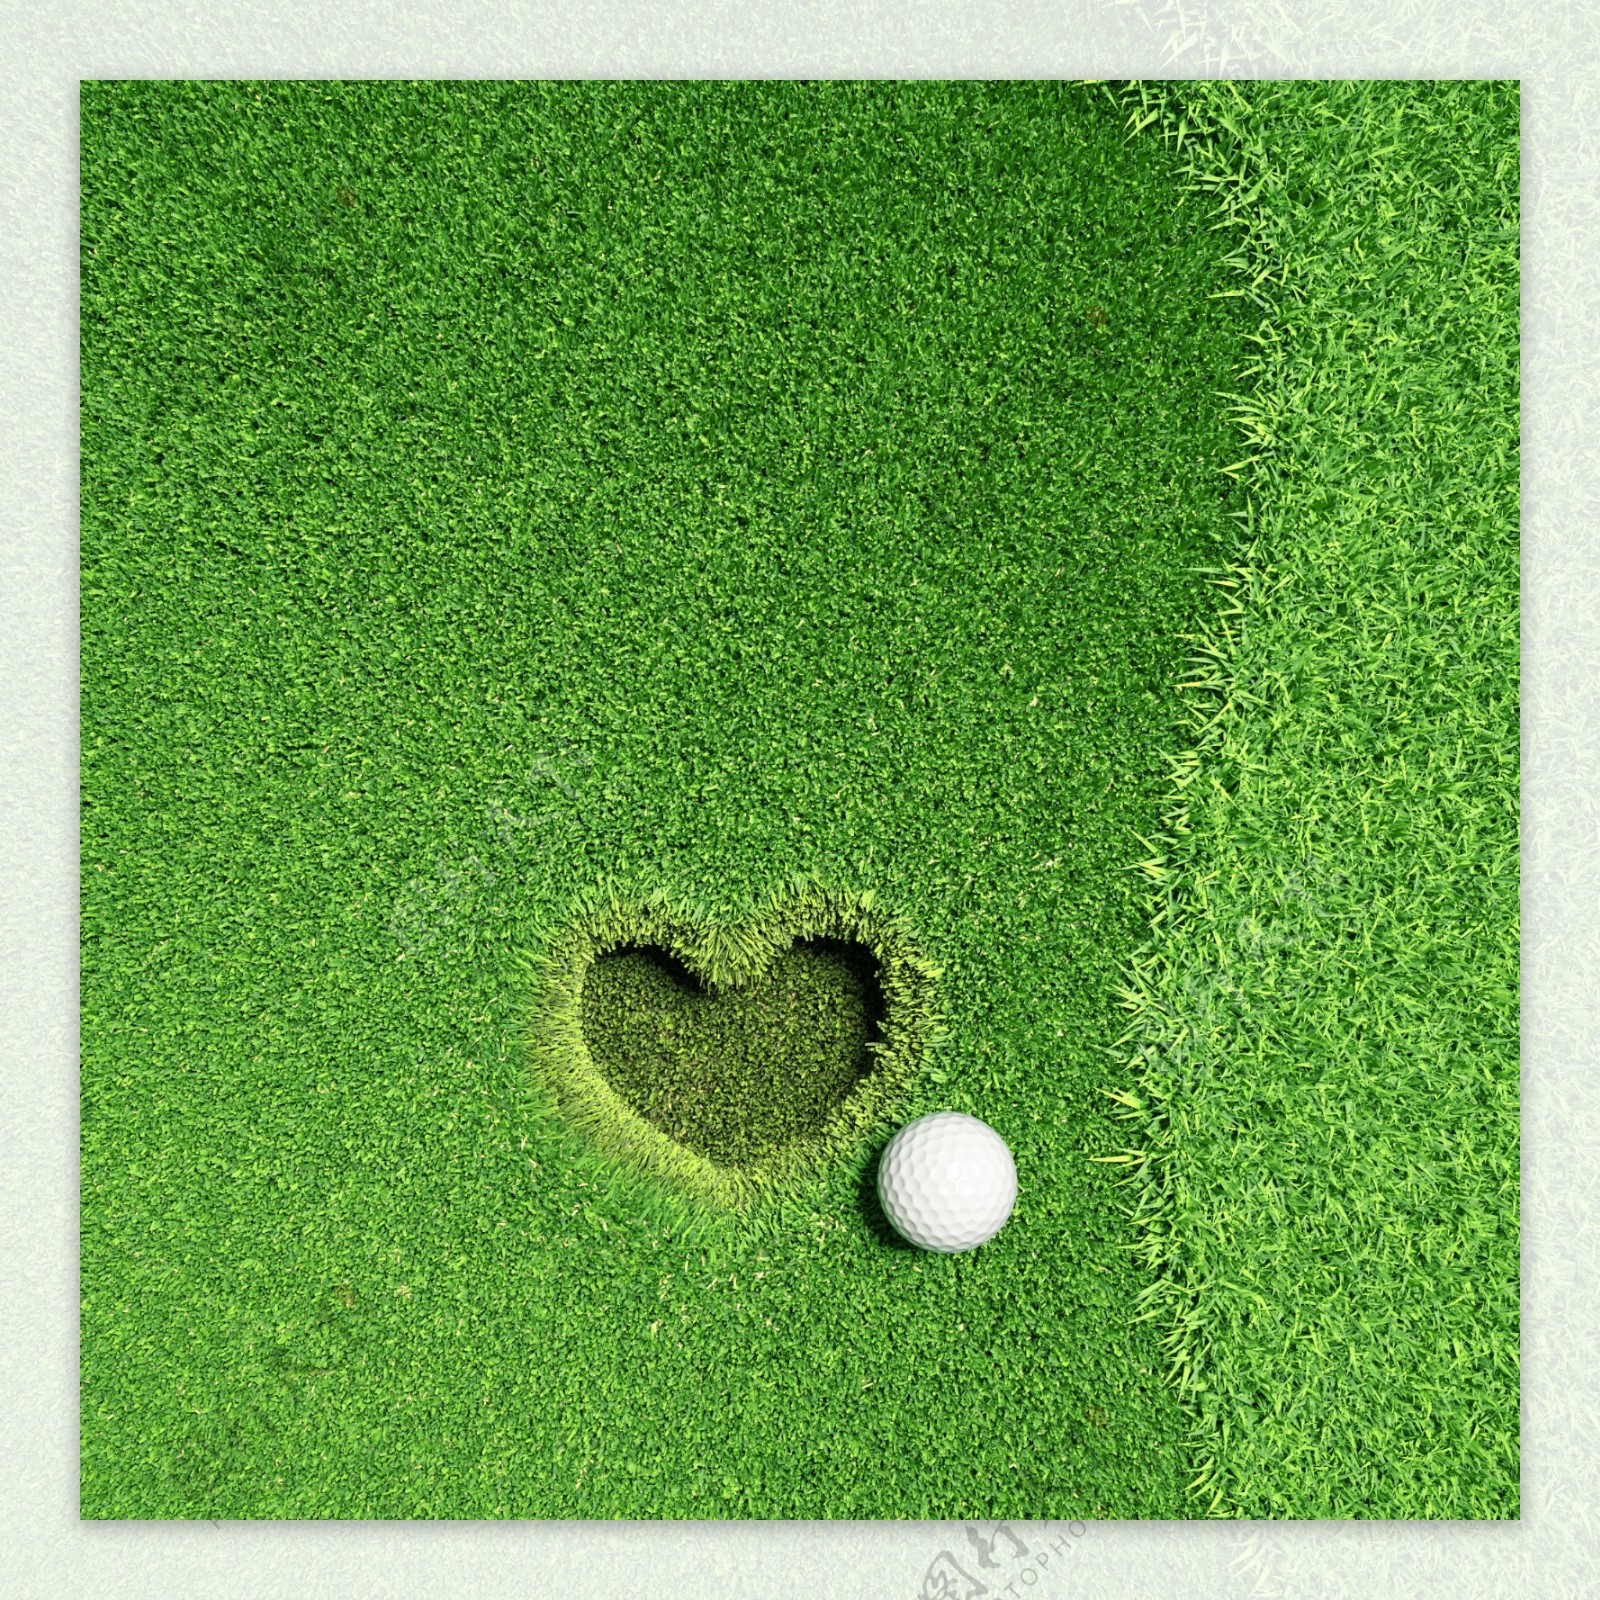 爱心球洞与高尔夫球图片